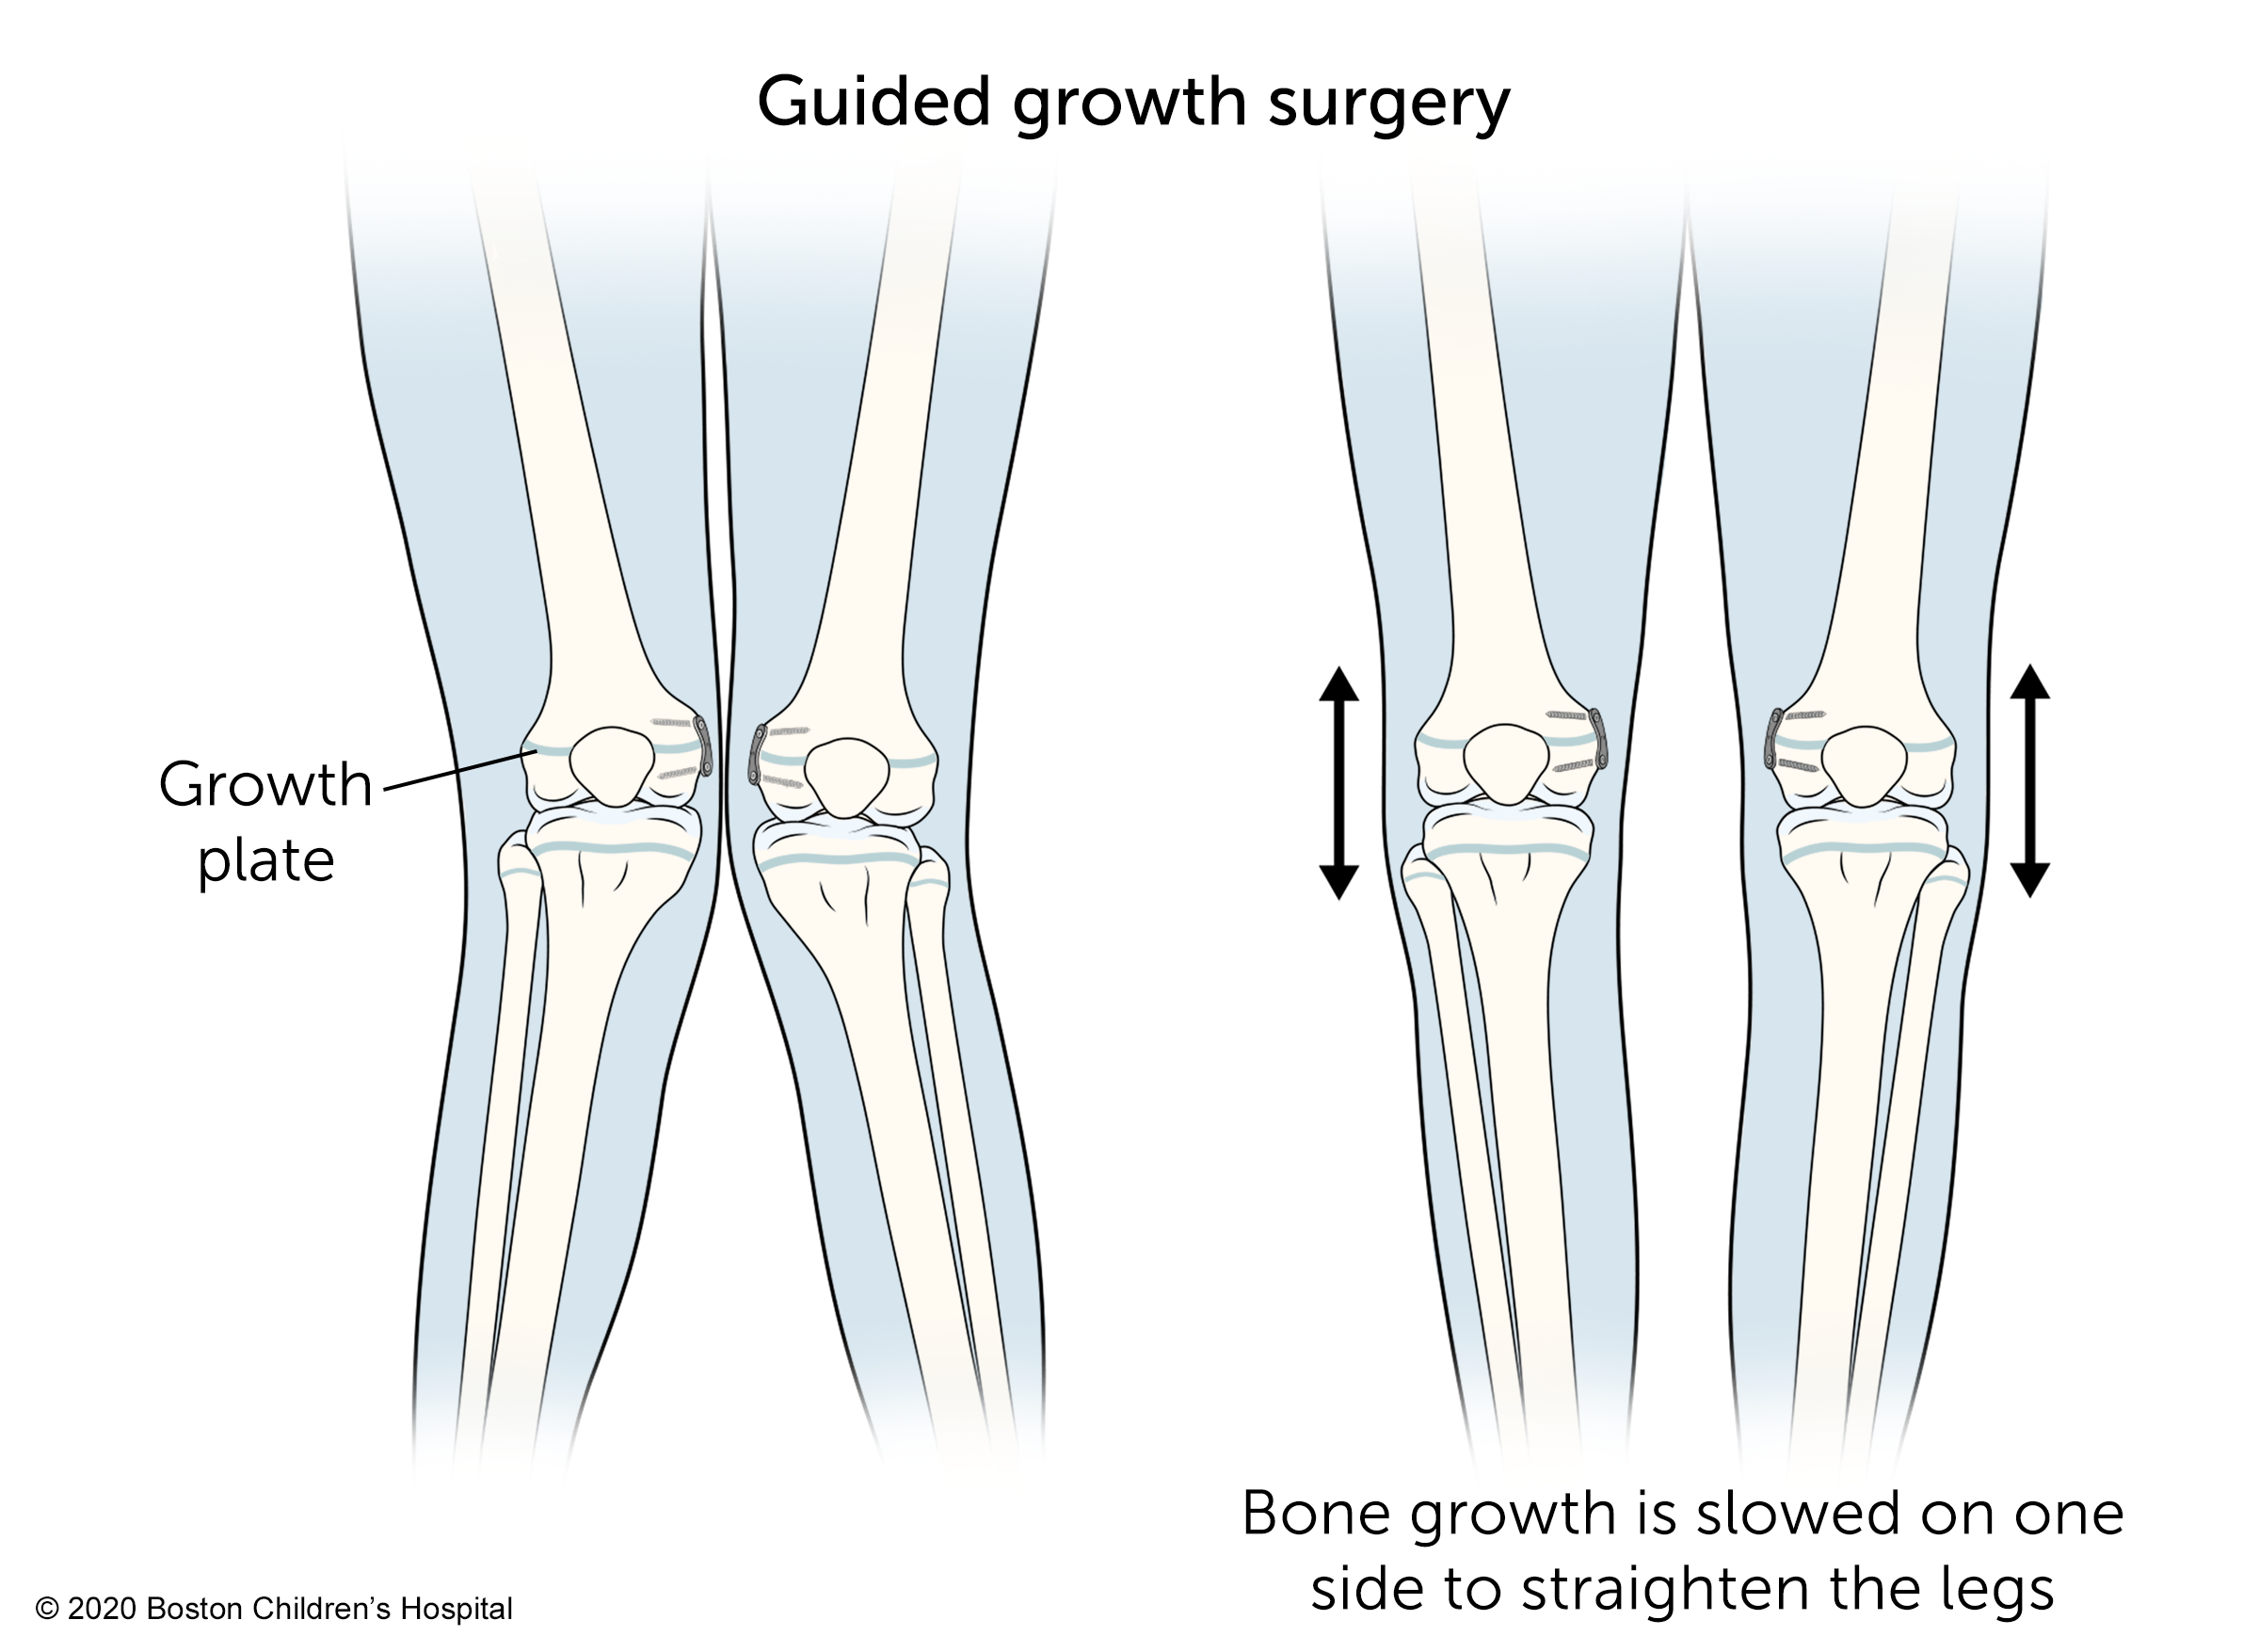 在引导生长手术中，一侧的骨骼生长减慢，以使腿部伸直。